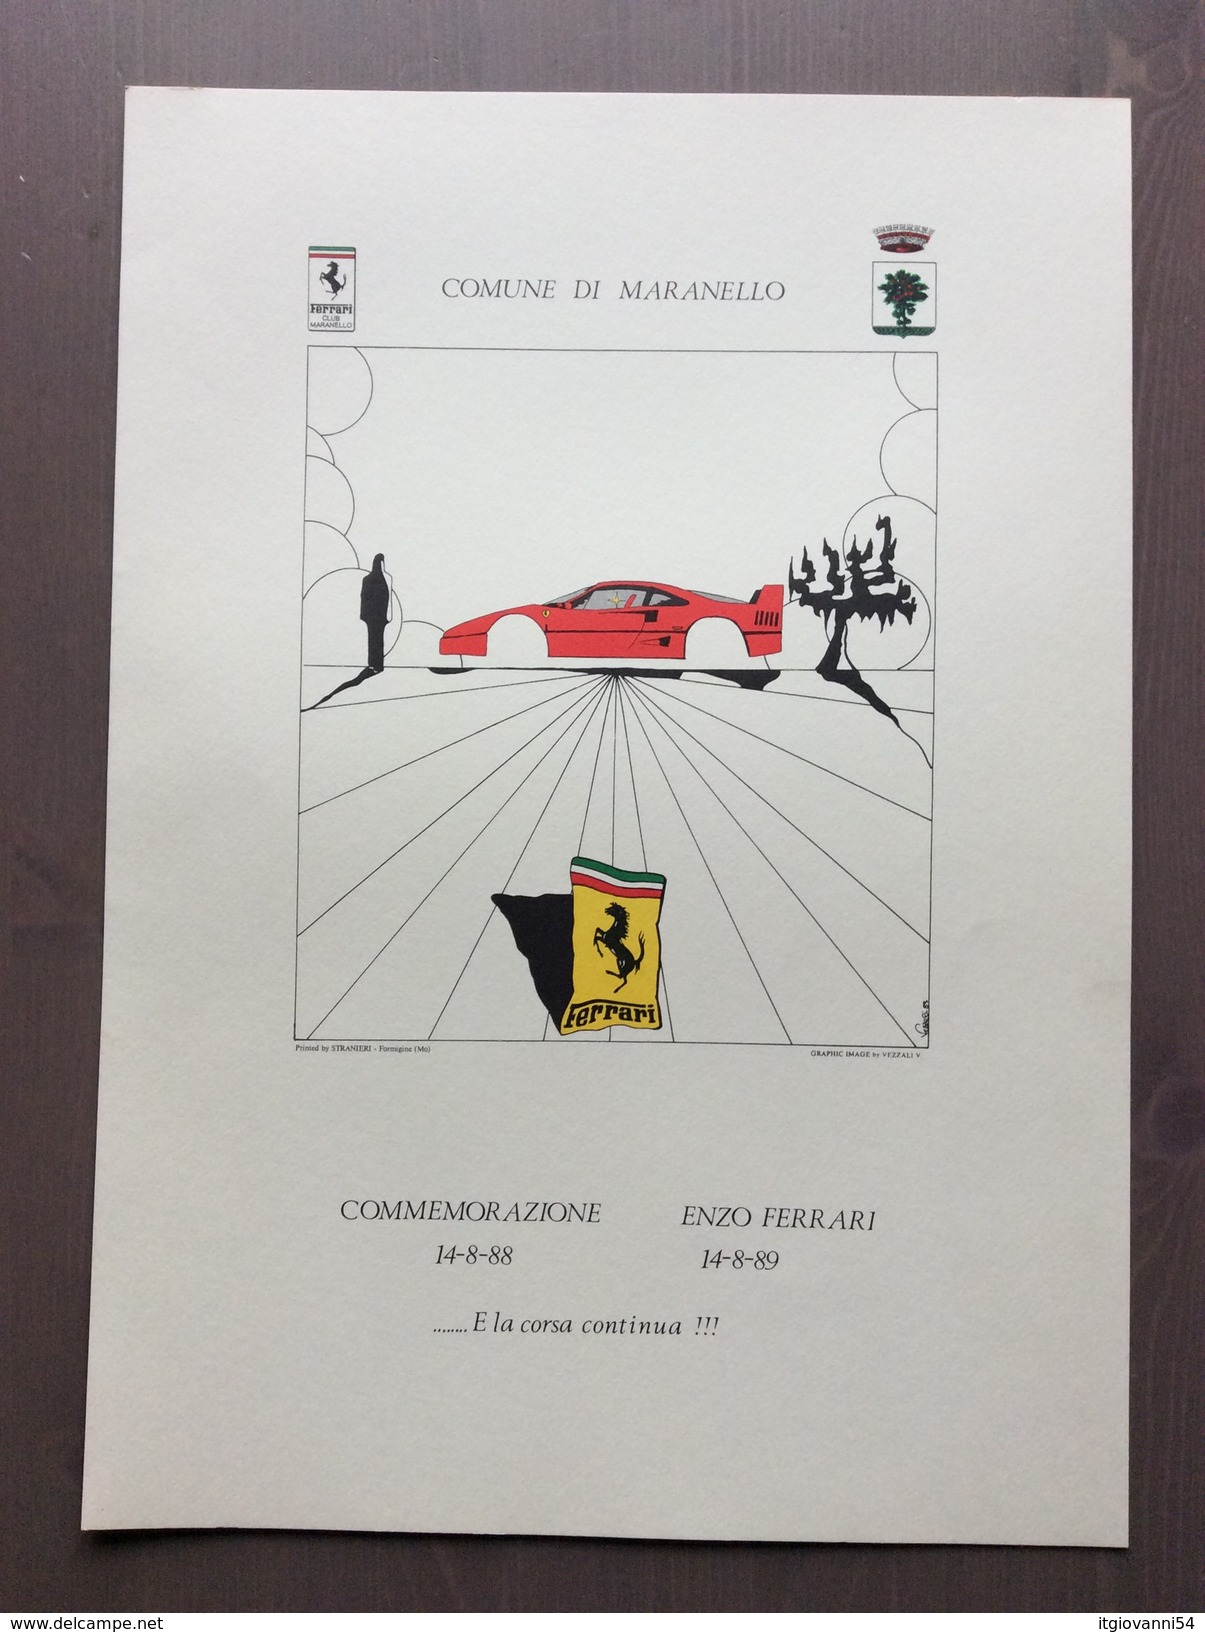 Cartella Della Galleria Ferrari Con 3 Stampe A Colori Di V. Vezzali Commemorazioni Della Morte Di Enzo Ferrari - Autorennen - F1